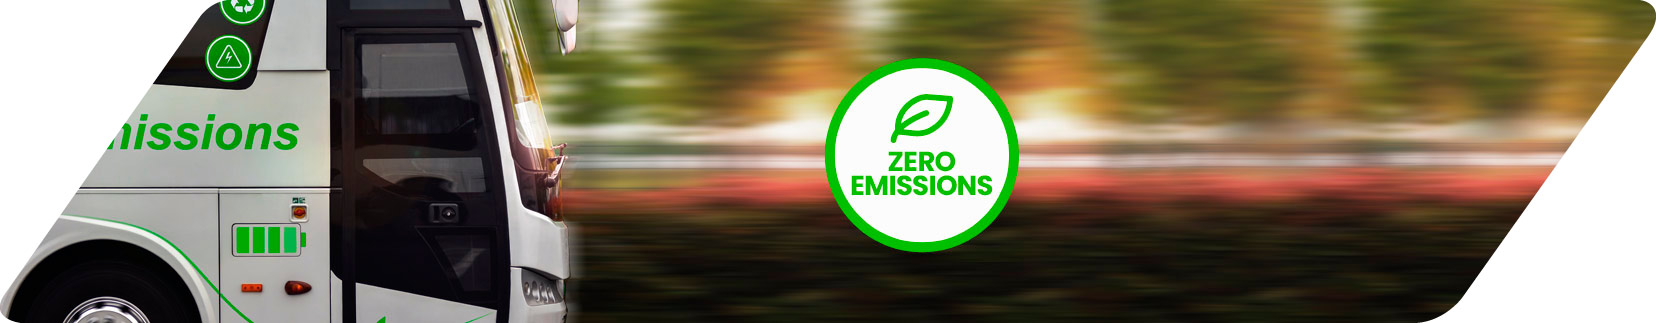 Pathway to zero emissions